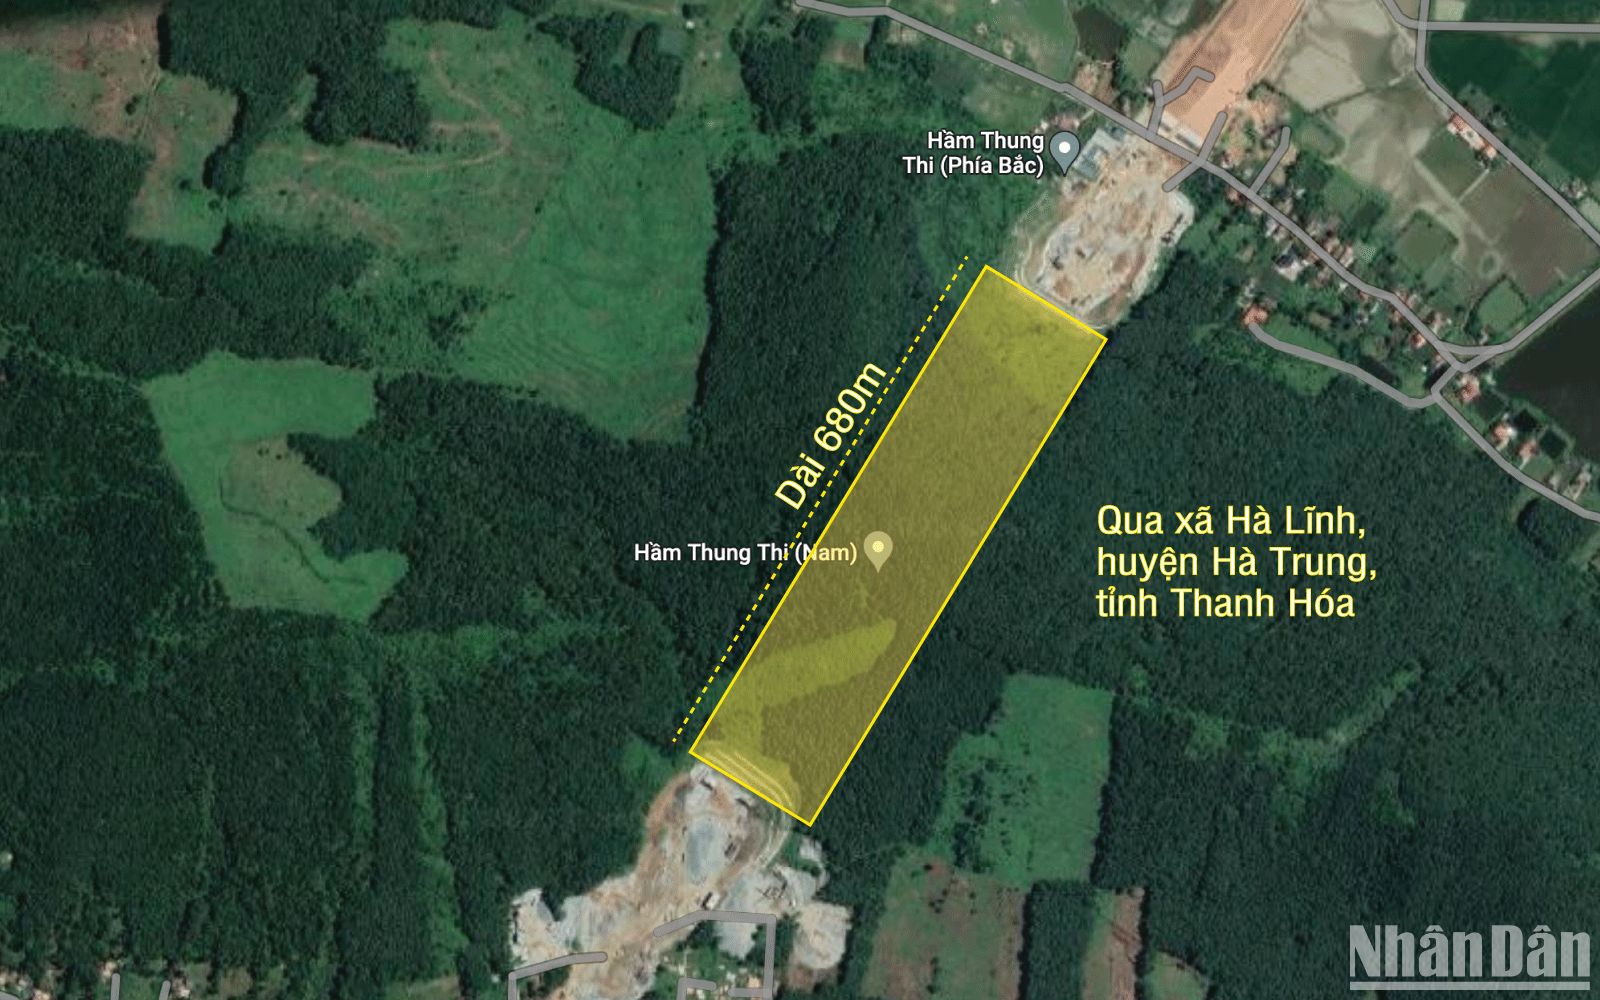 [Infographic] Hầm xuyên núi Thung Thi sắp thông xe